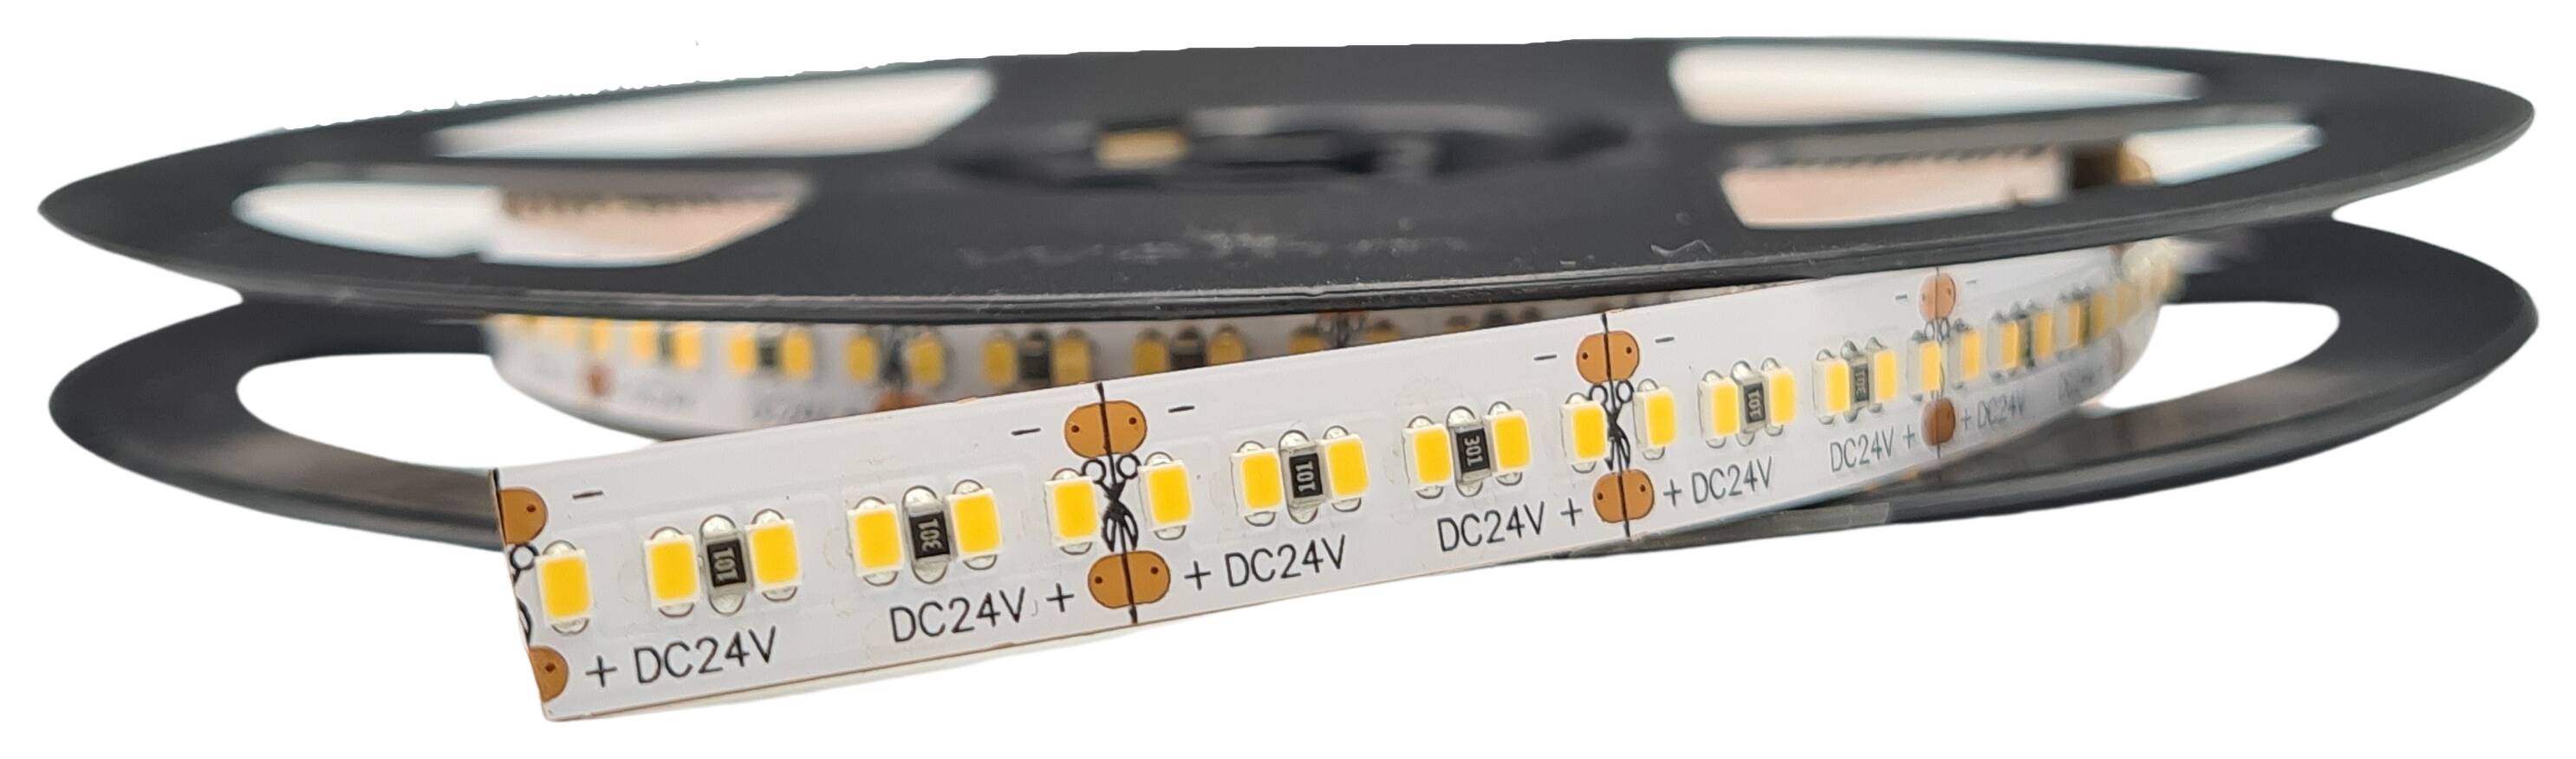 LED-Strip flexibel IP20 24V 24W/m 2320lm/m 4.000K RA>90 300LEDs/m rückseitig 3M Tape Rolle à 5 m